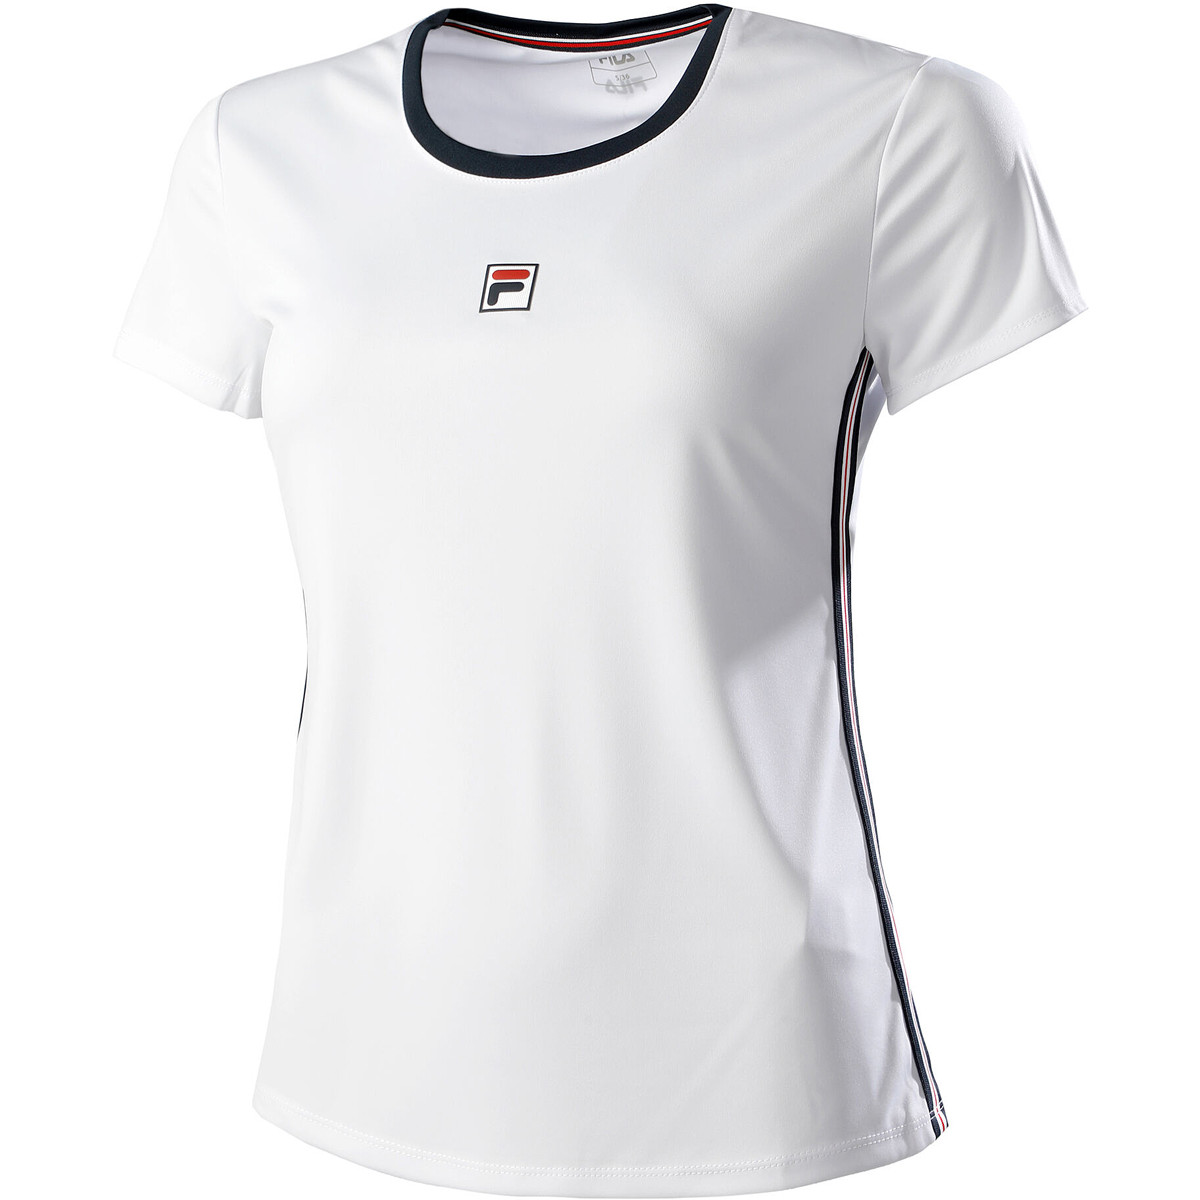 T-shirt de tennis Fila junior Lucy